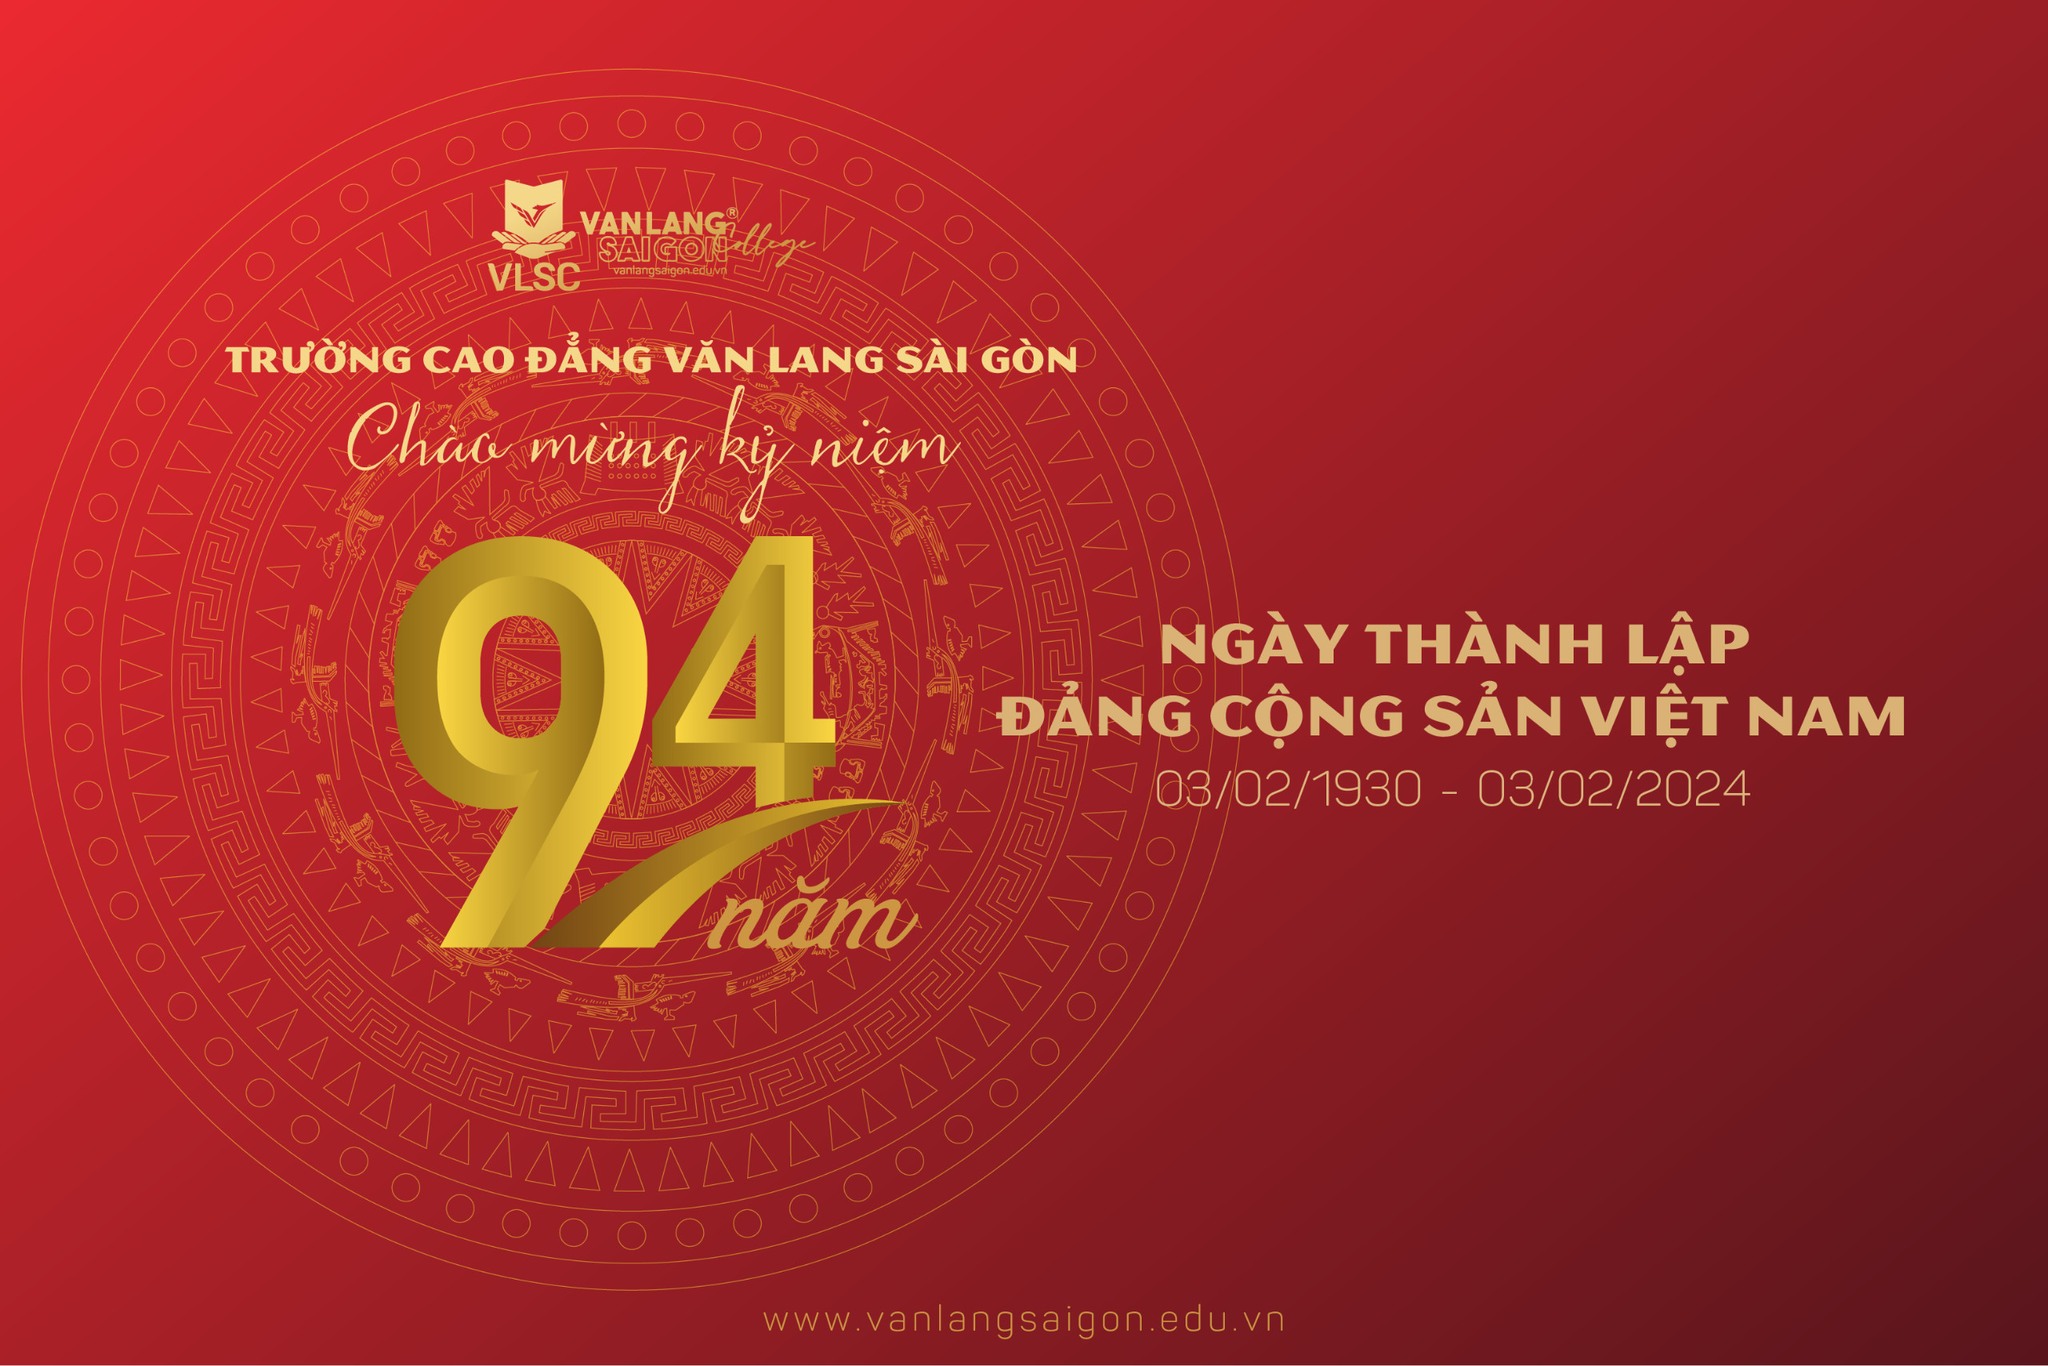 Trường Cao đẳng Văn Lang Sài Gòn chào mừng kỷ niệm 94 năm ngày thành lập Đảng Cộng sản Việt Nam (3/2/1930 - 3/2/2024) 